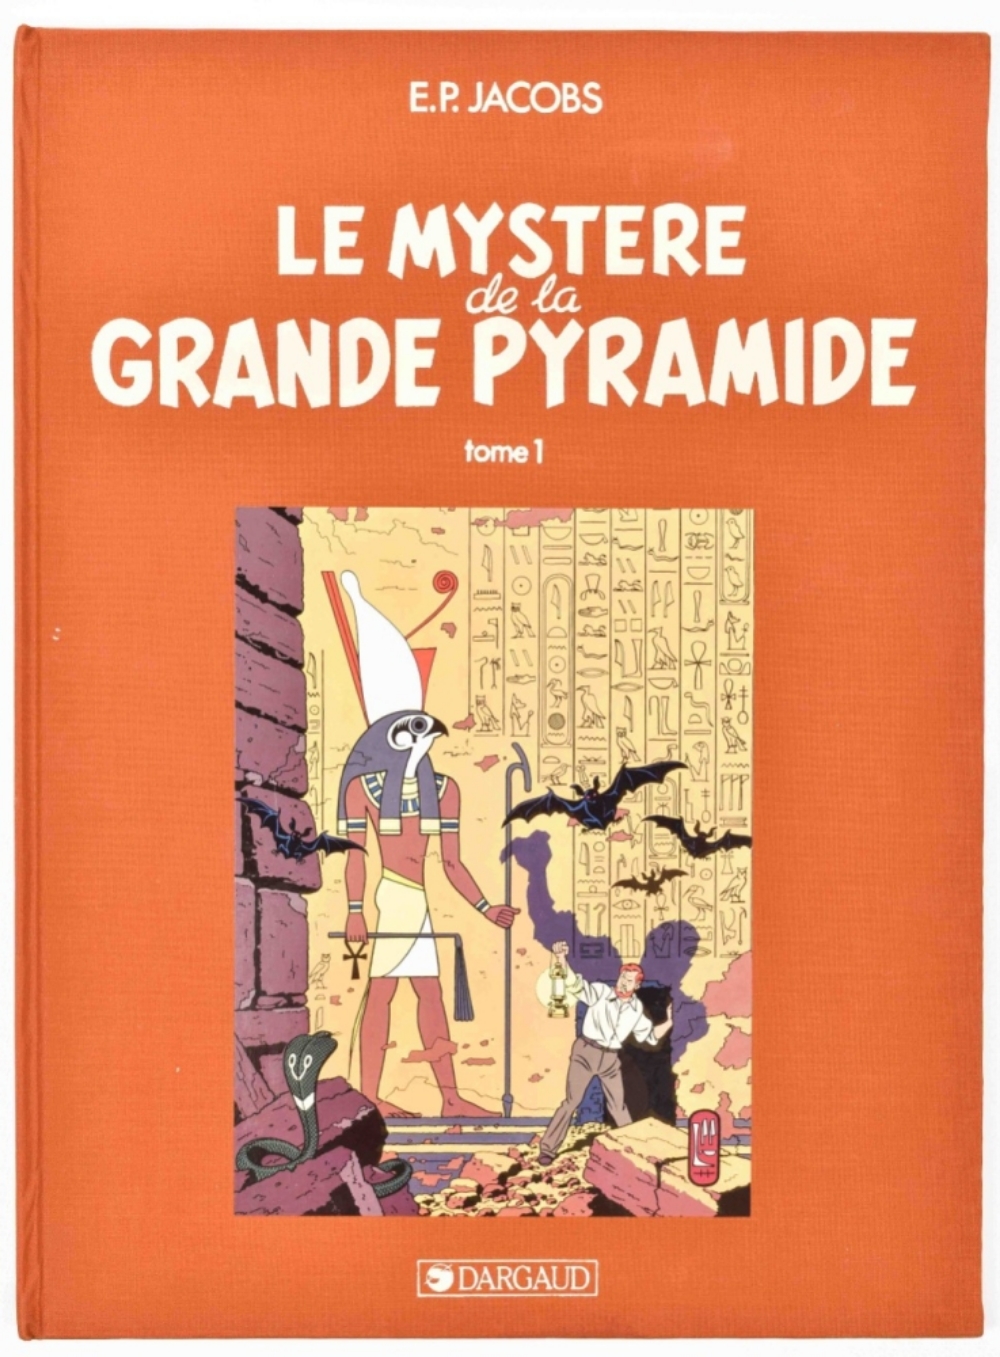 Edgar P. Jacobs. Le Mystere de la Grande Pyramide. Vol. I - Image 8 of 8